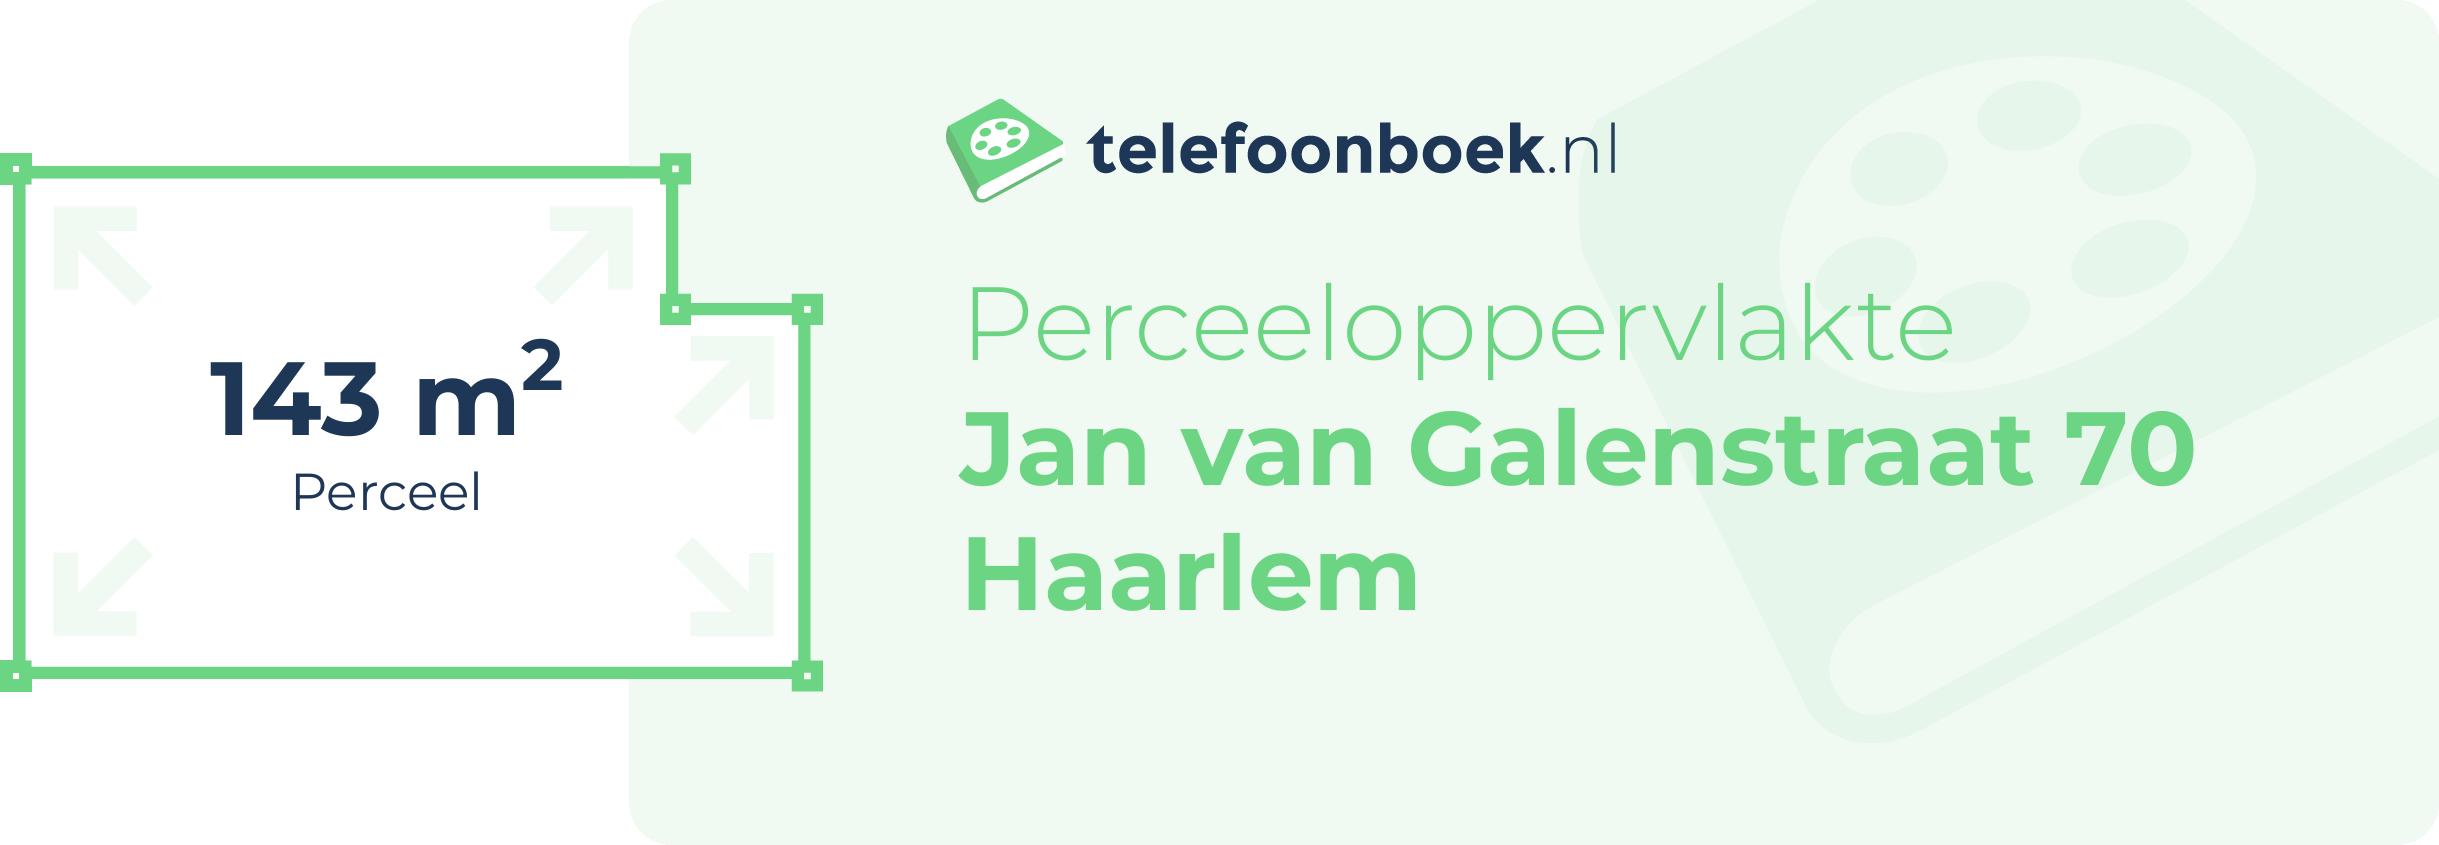 Perceeloppervlakte Jan Van Galenstraat 70 Haarlem